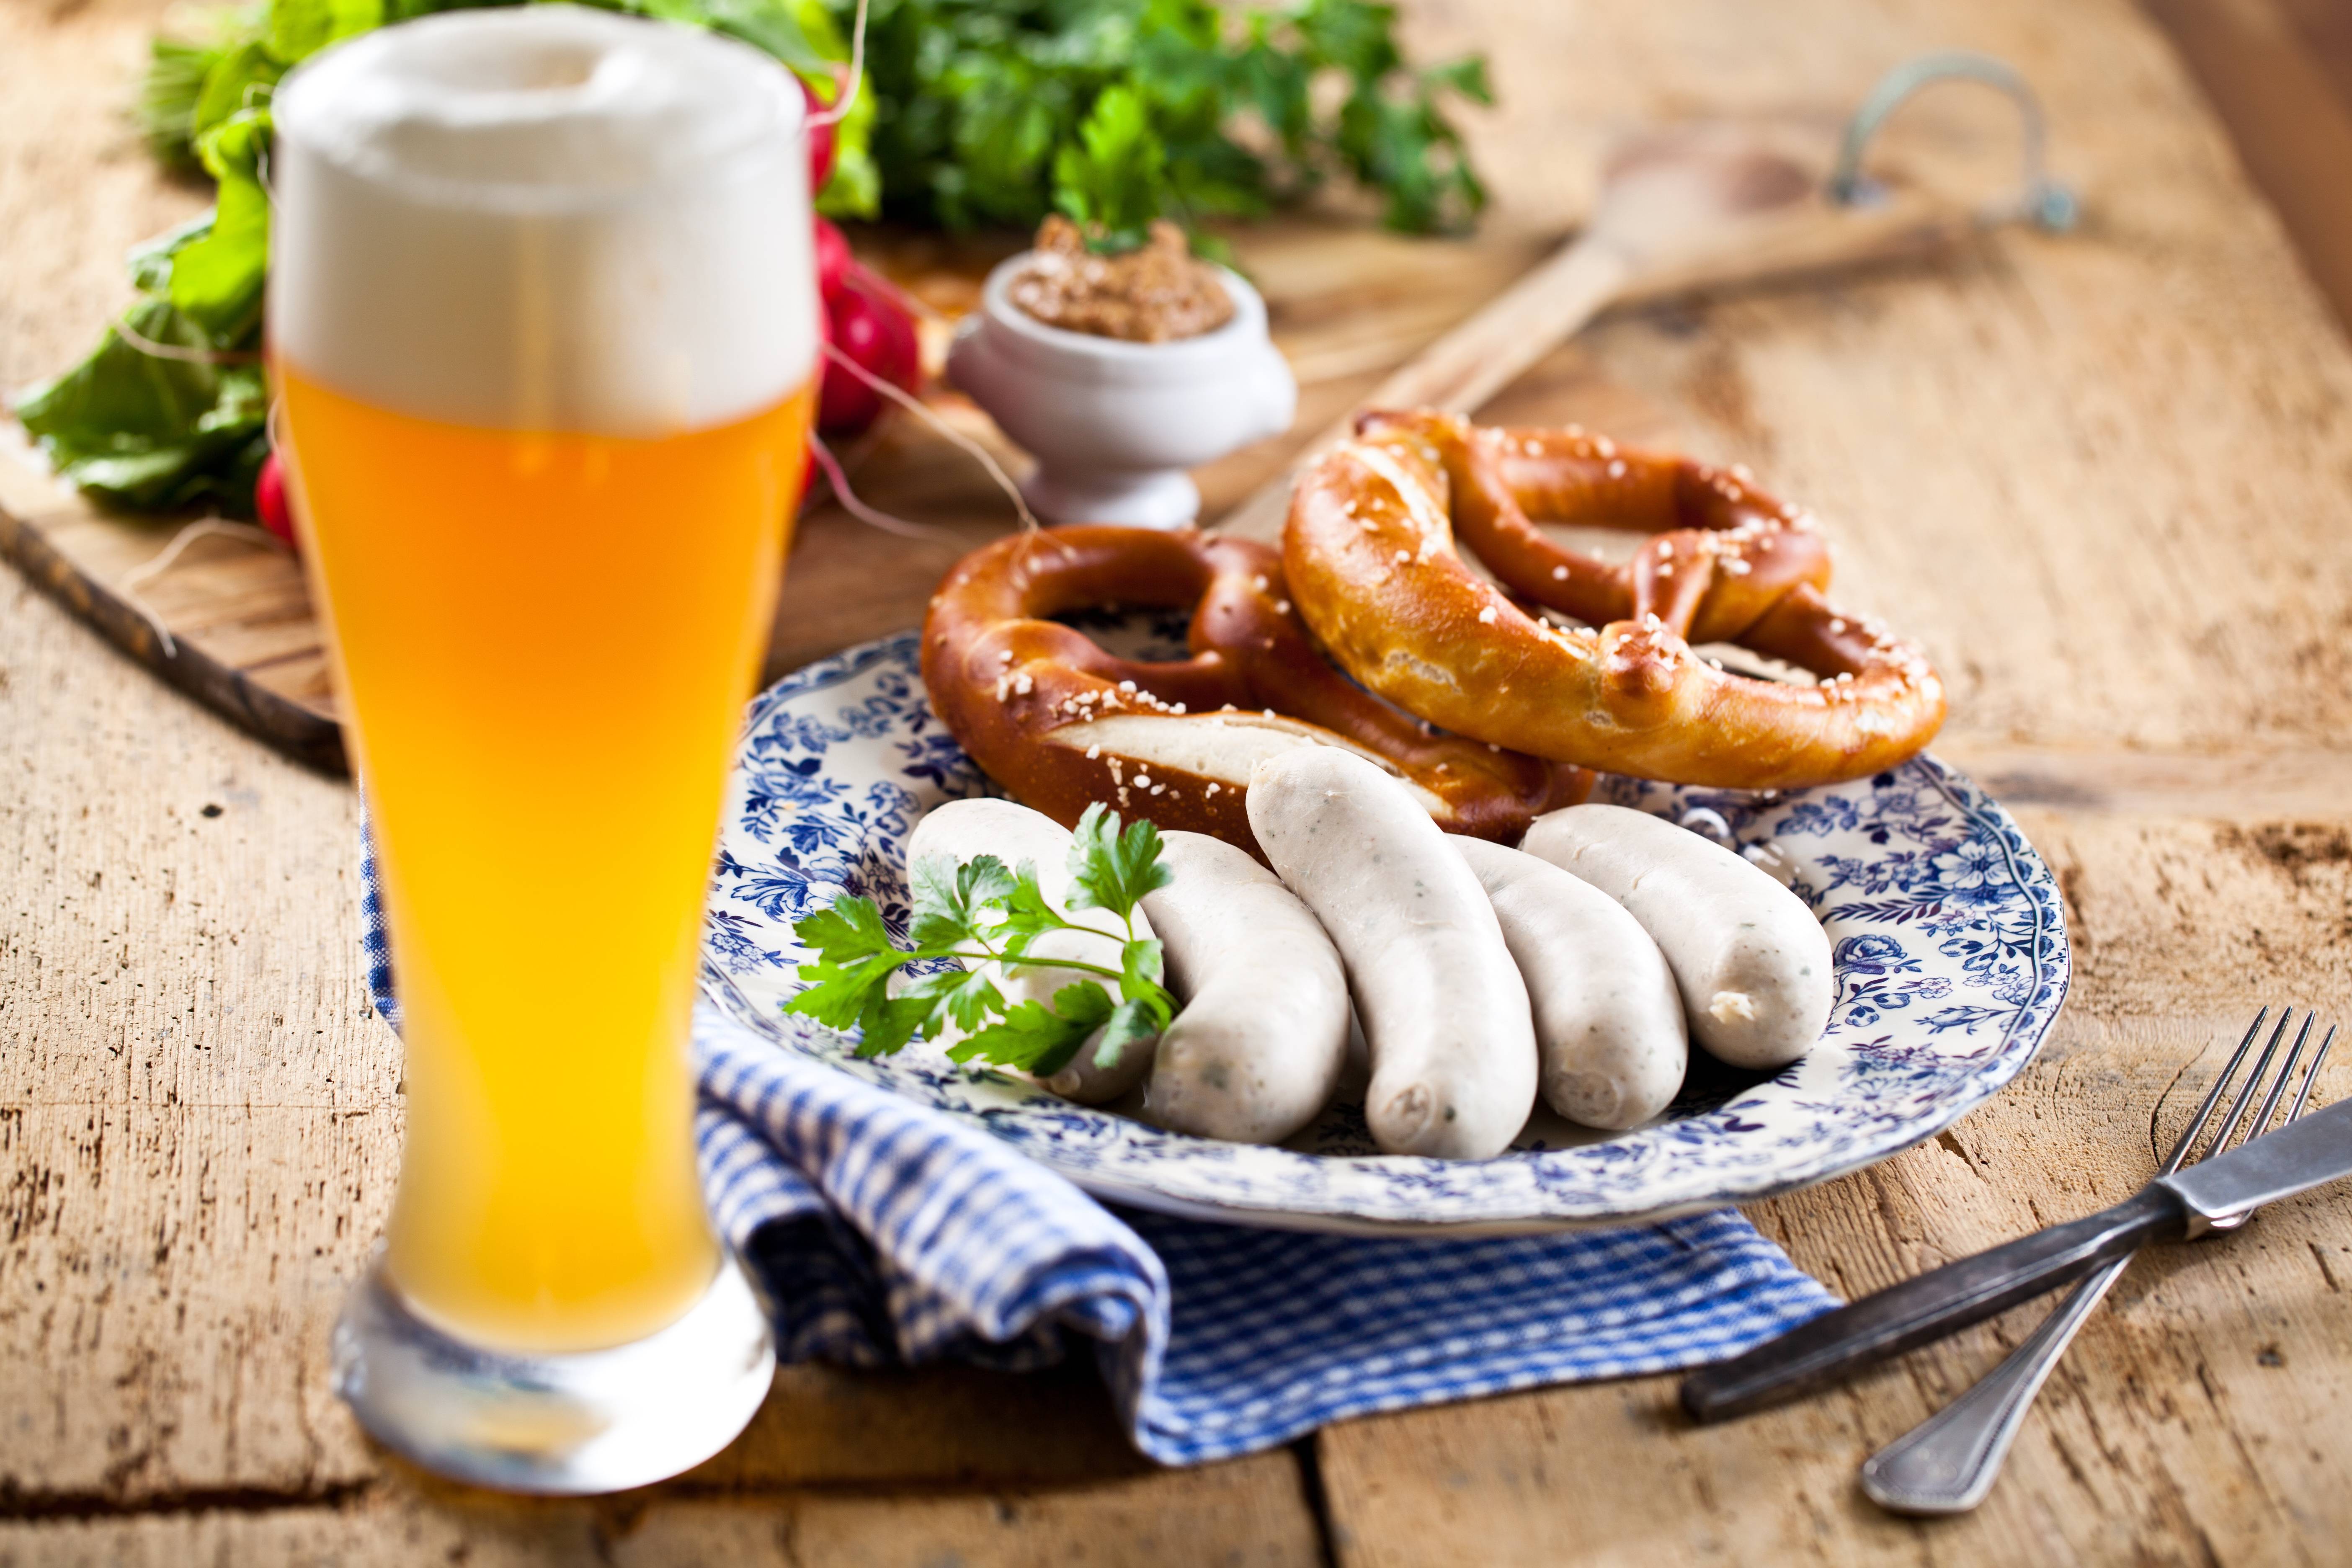 Кофе по-баварски: рецепт, состав, ингредиенты как приготовить